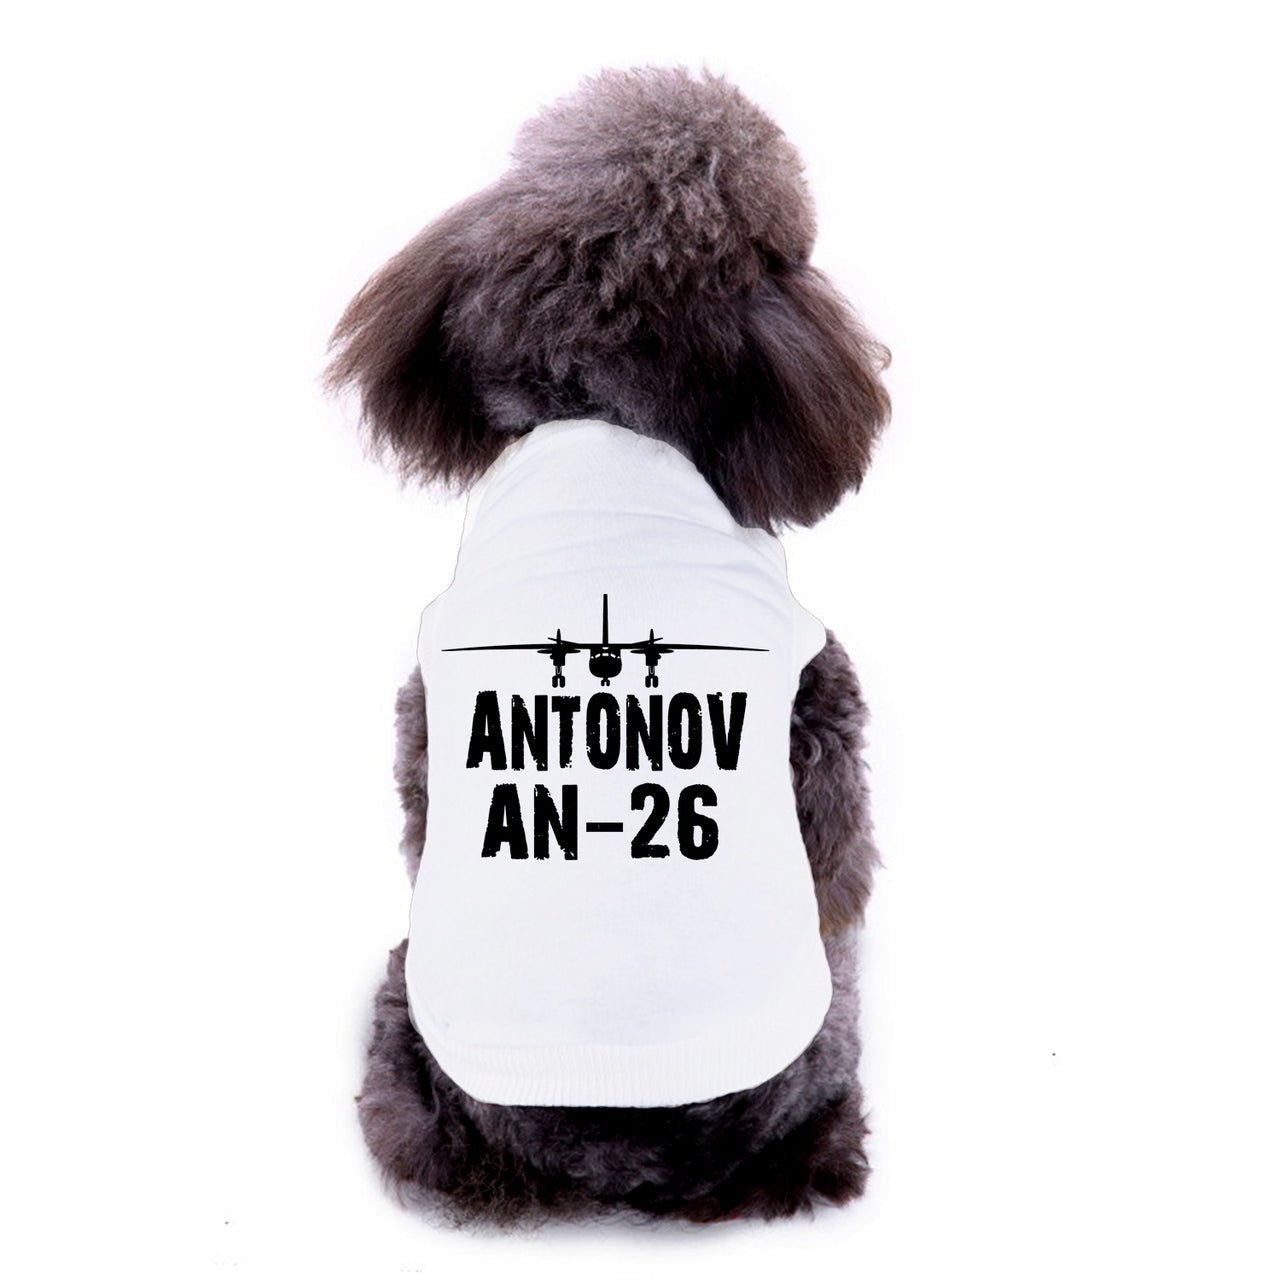 Antonov AN-26 & Plane Designed Dog Pet Vests